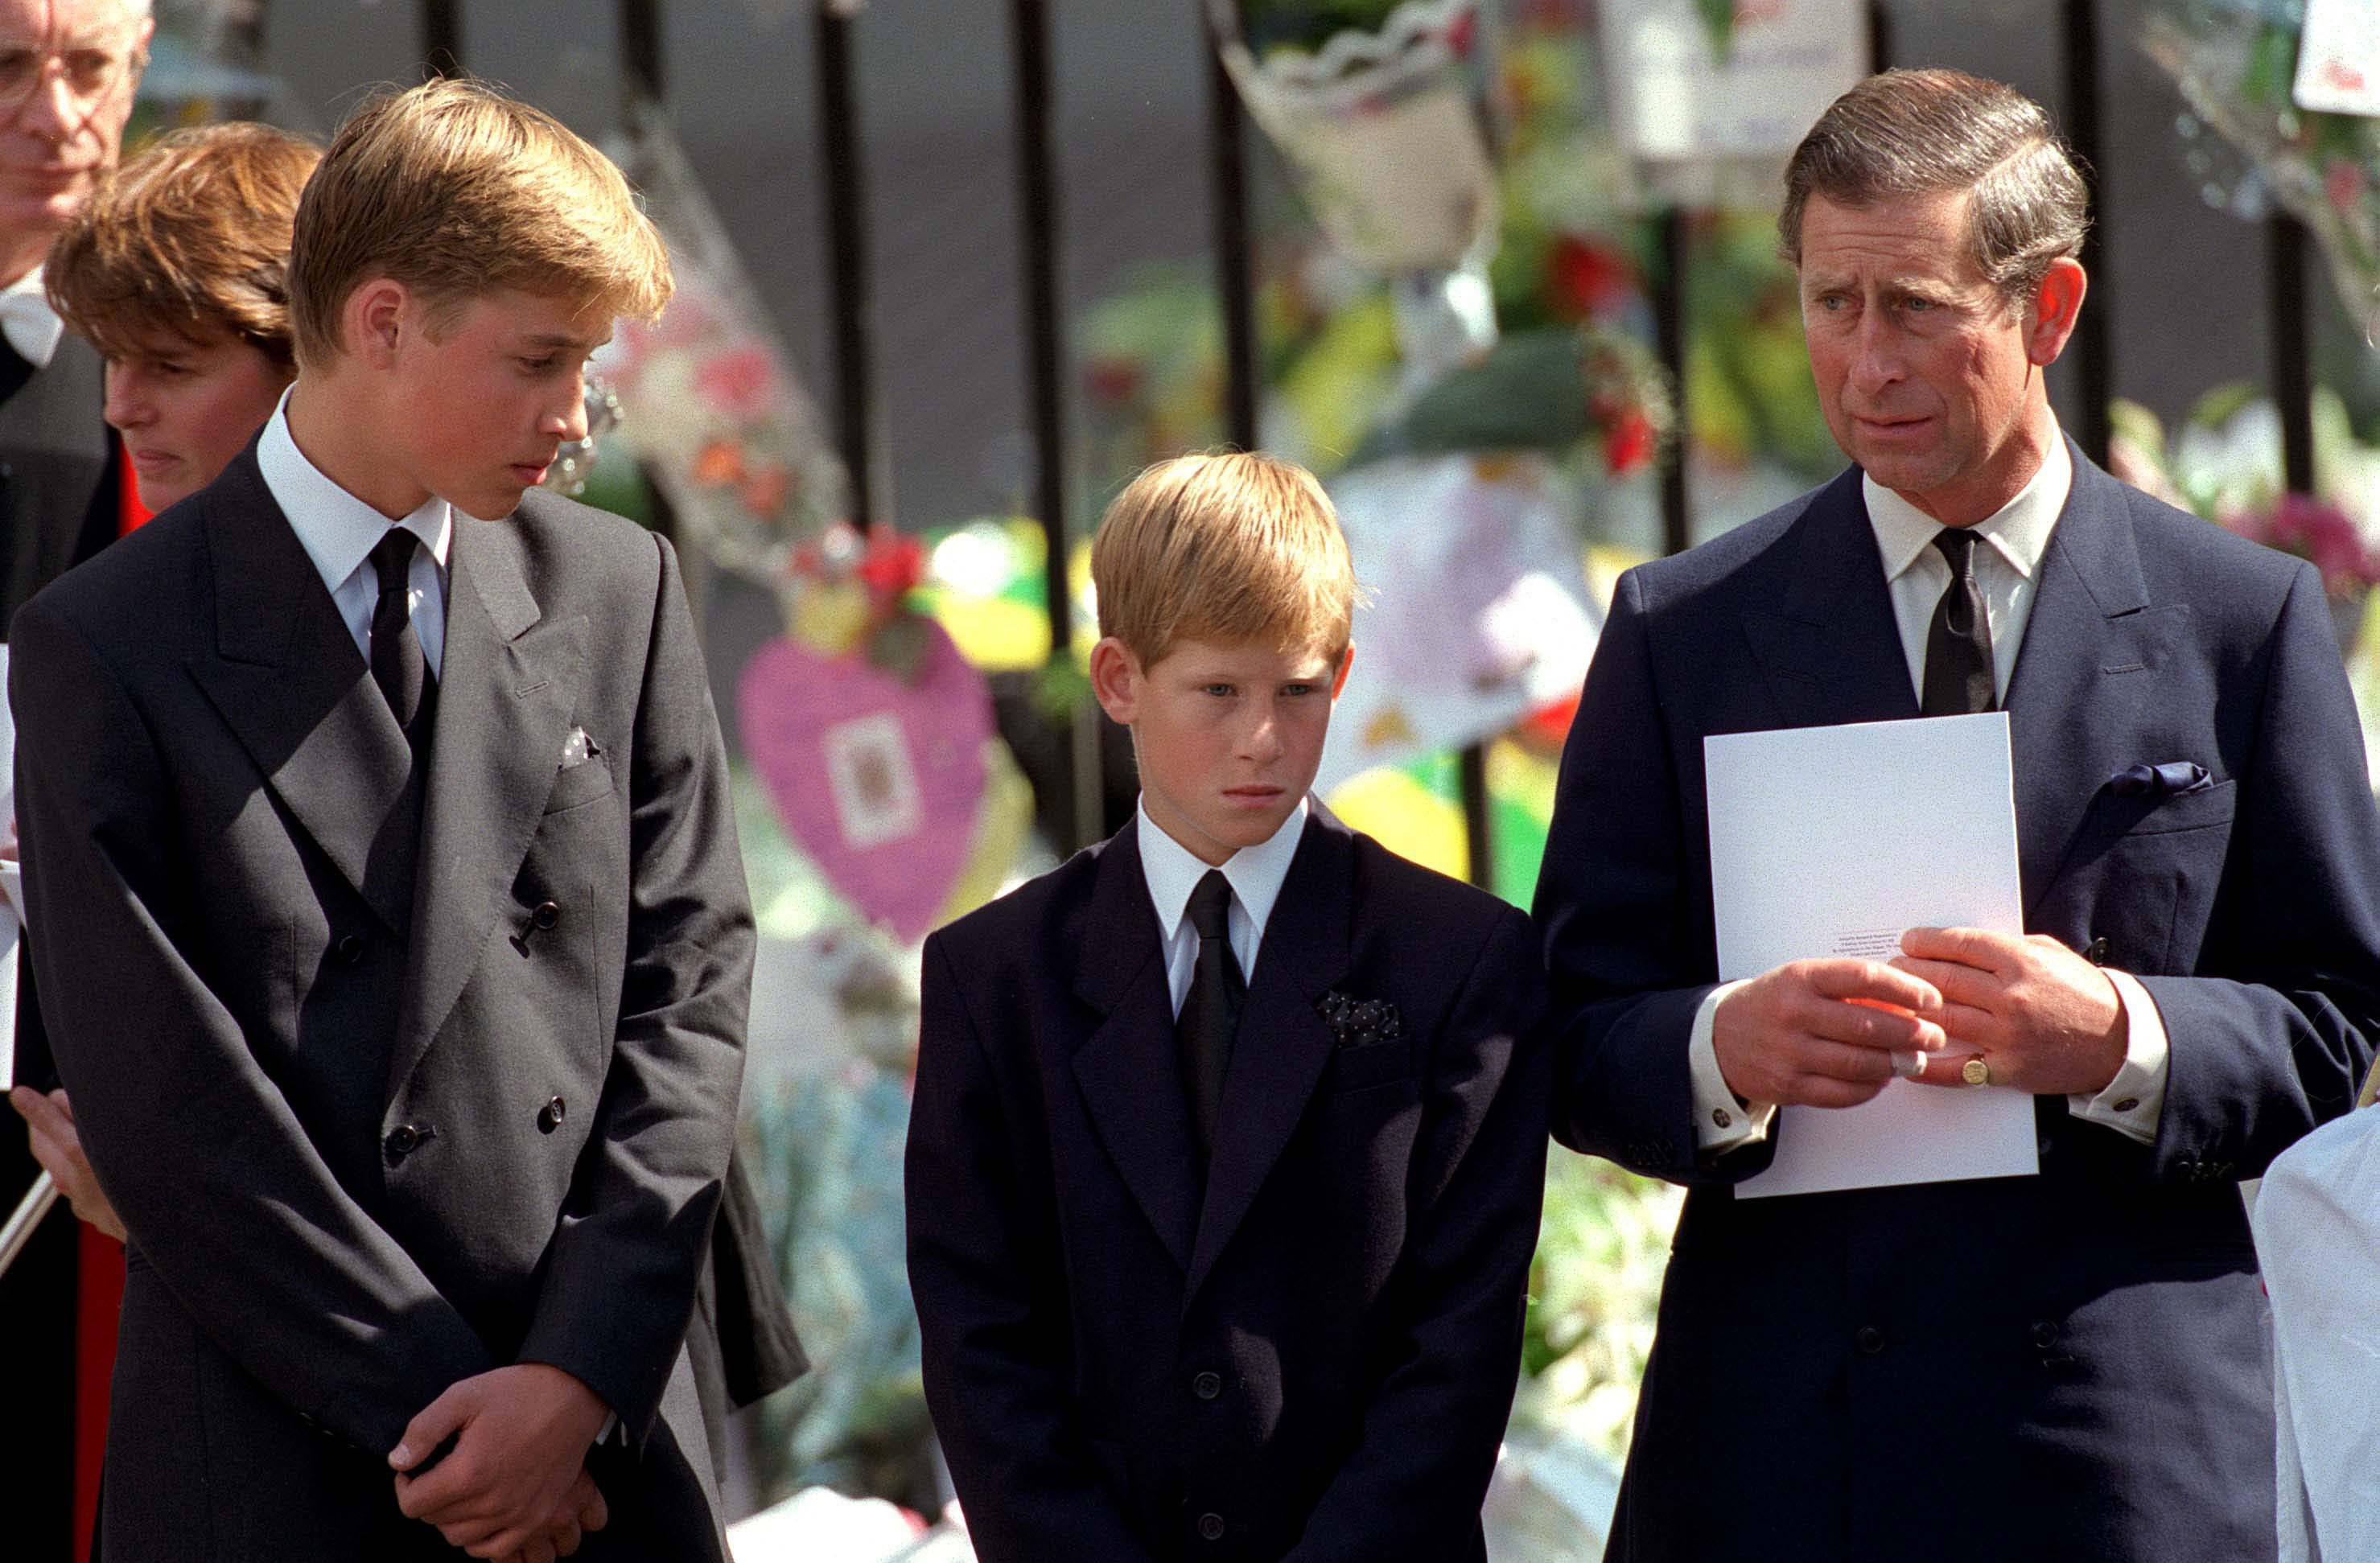 El actual rey Charles III con el príncipe William y el príncipe Harry fuera de la Abadía de Westminster en el funeral de Diana, princesa de Gales, el 6 de septiembre de 1997 | Foto: Getty Images